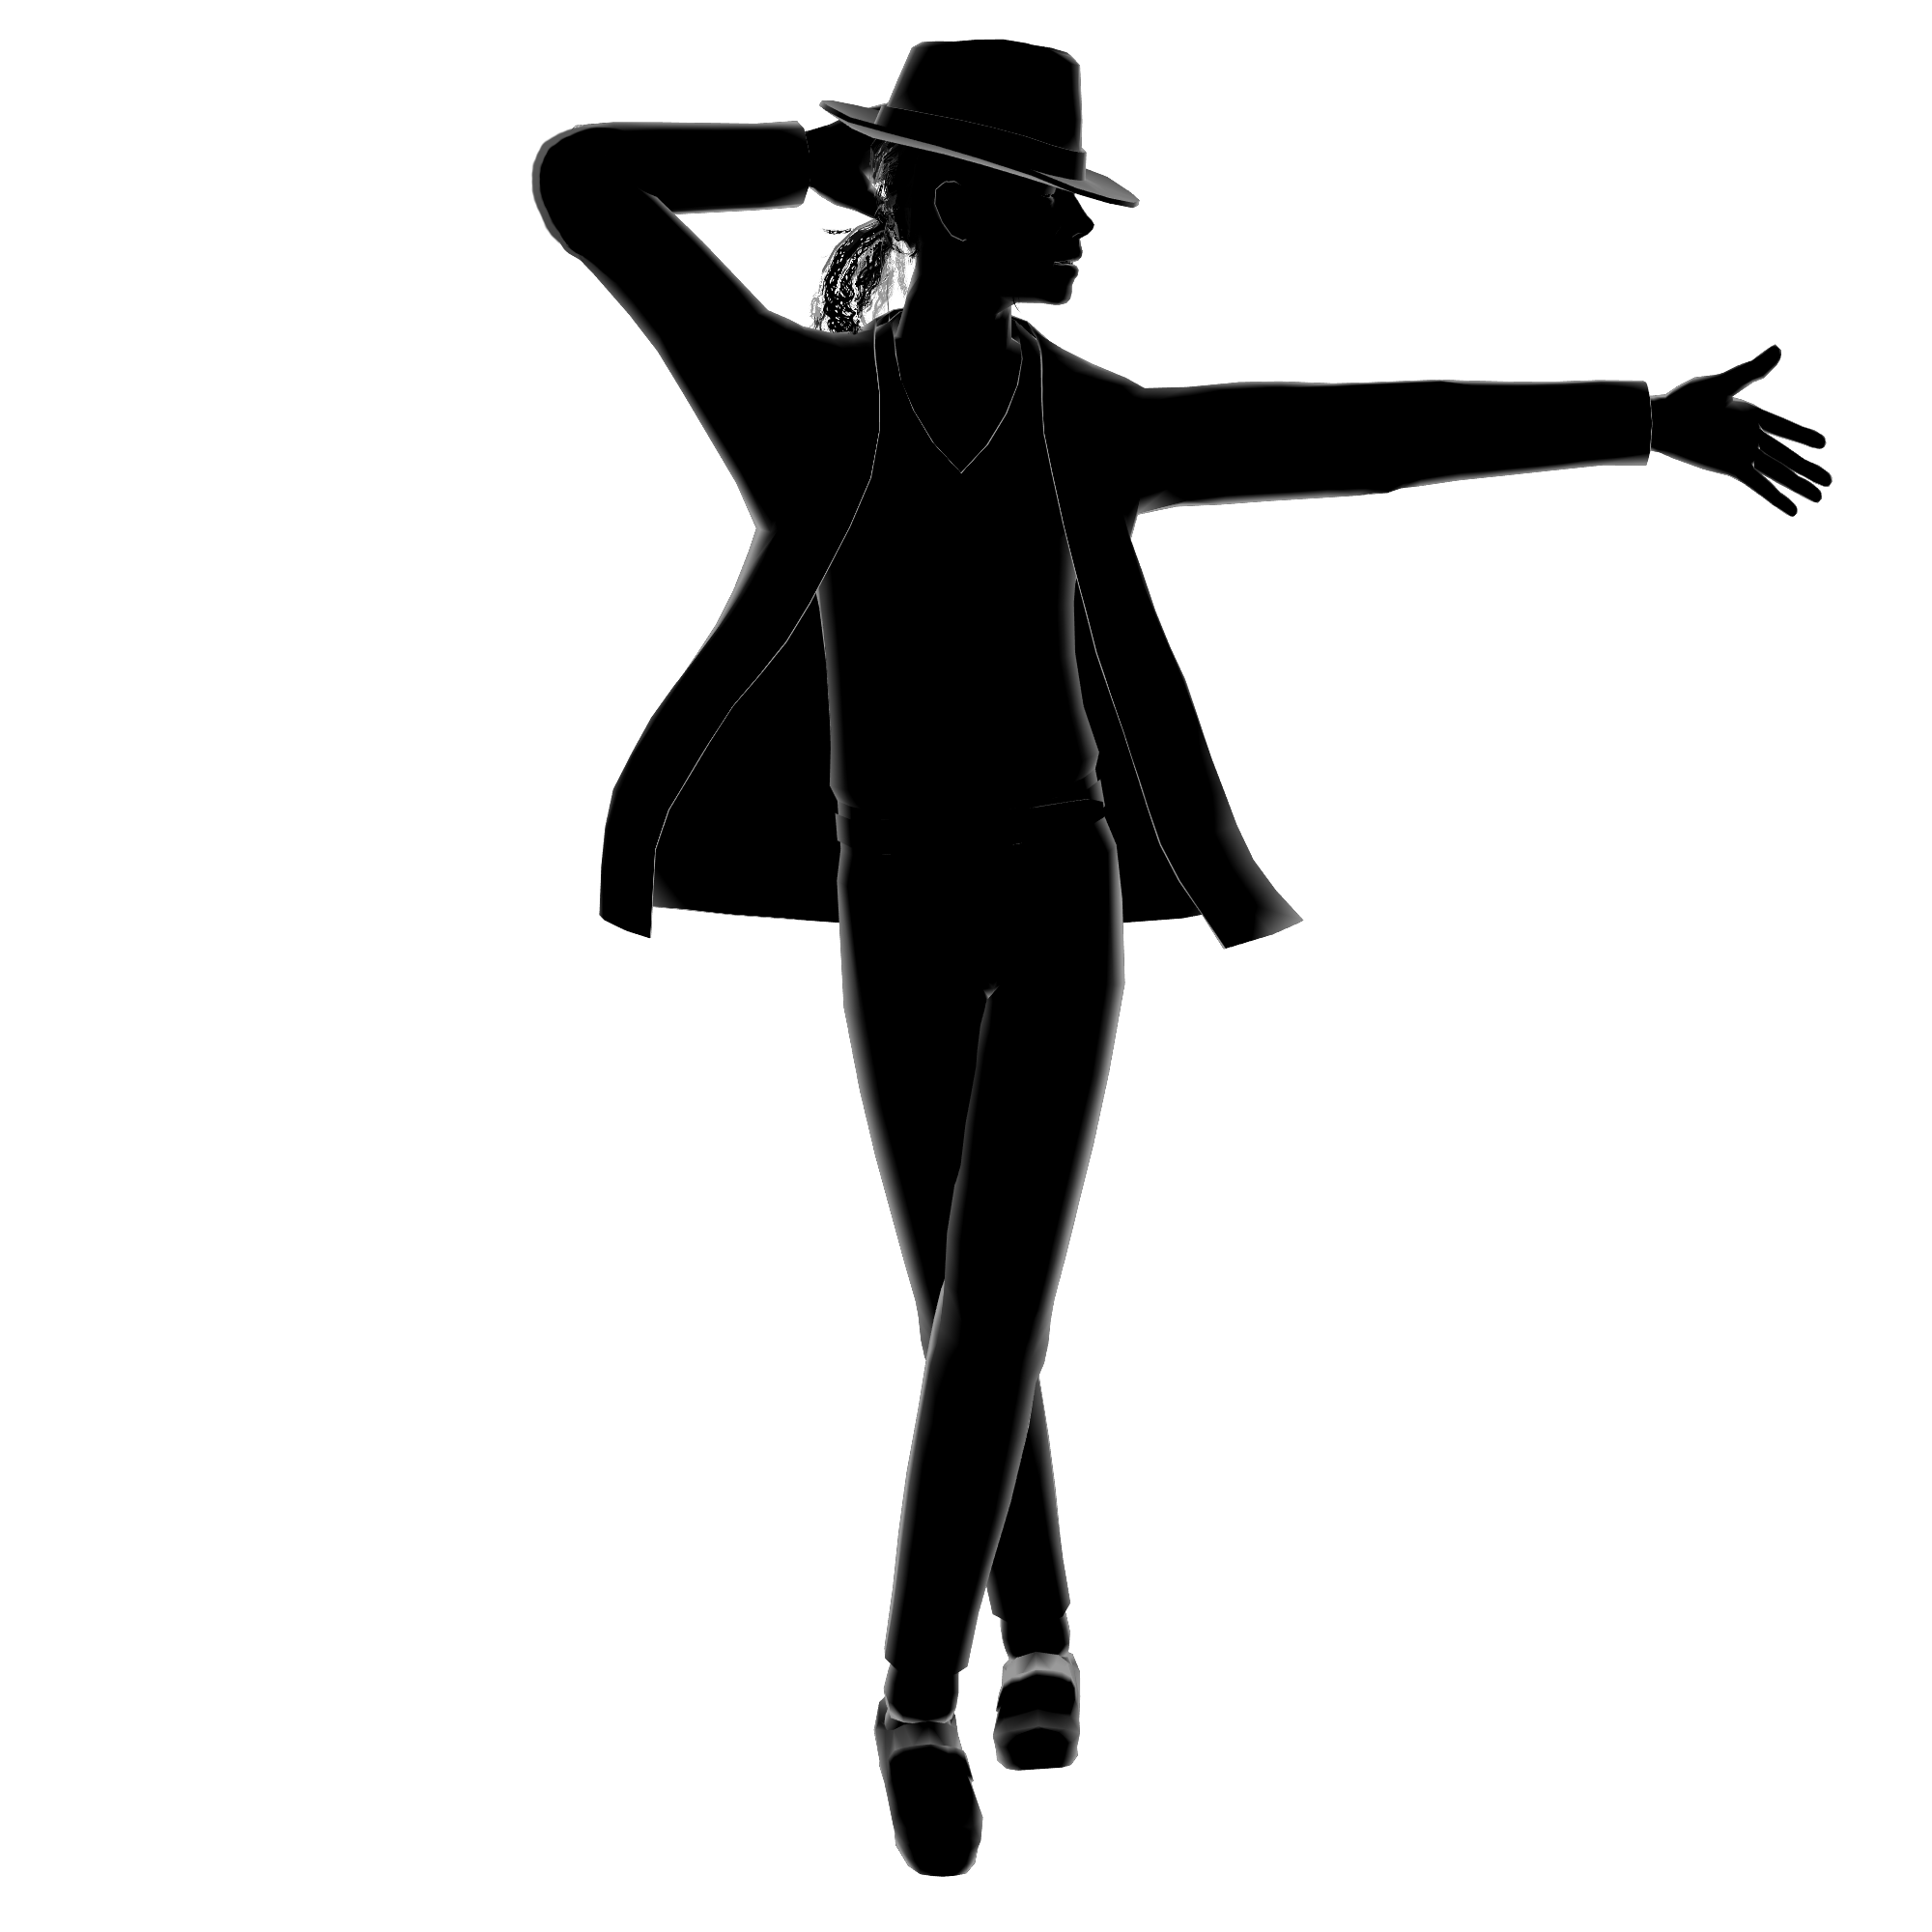 Michael Jackson PNG transparent image download, size: 2000x2000px